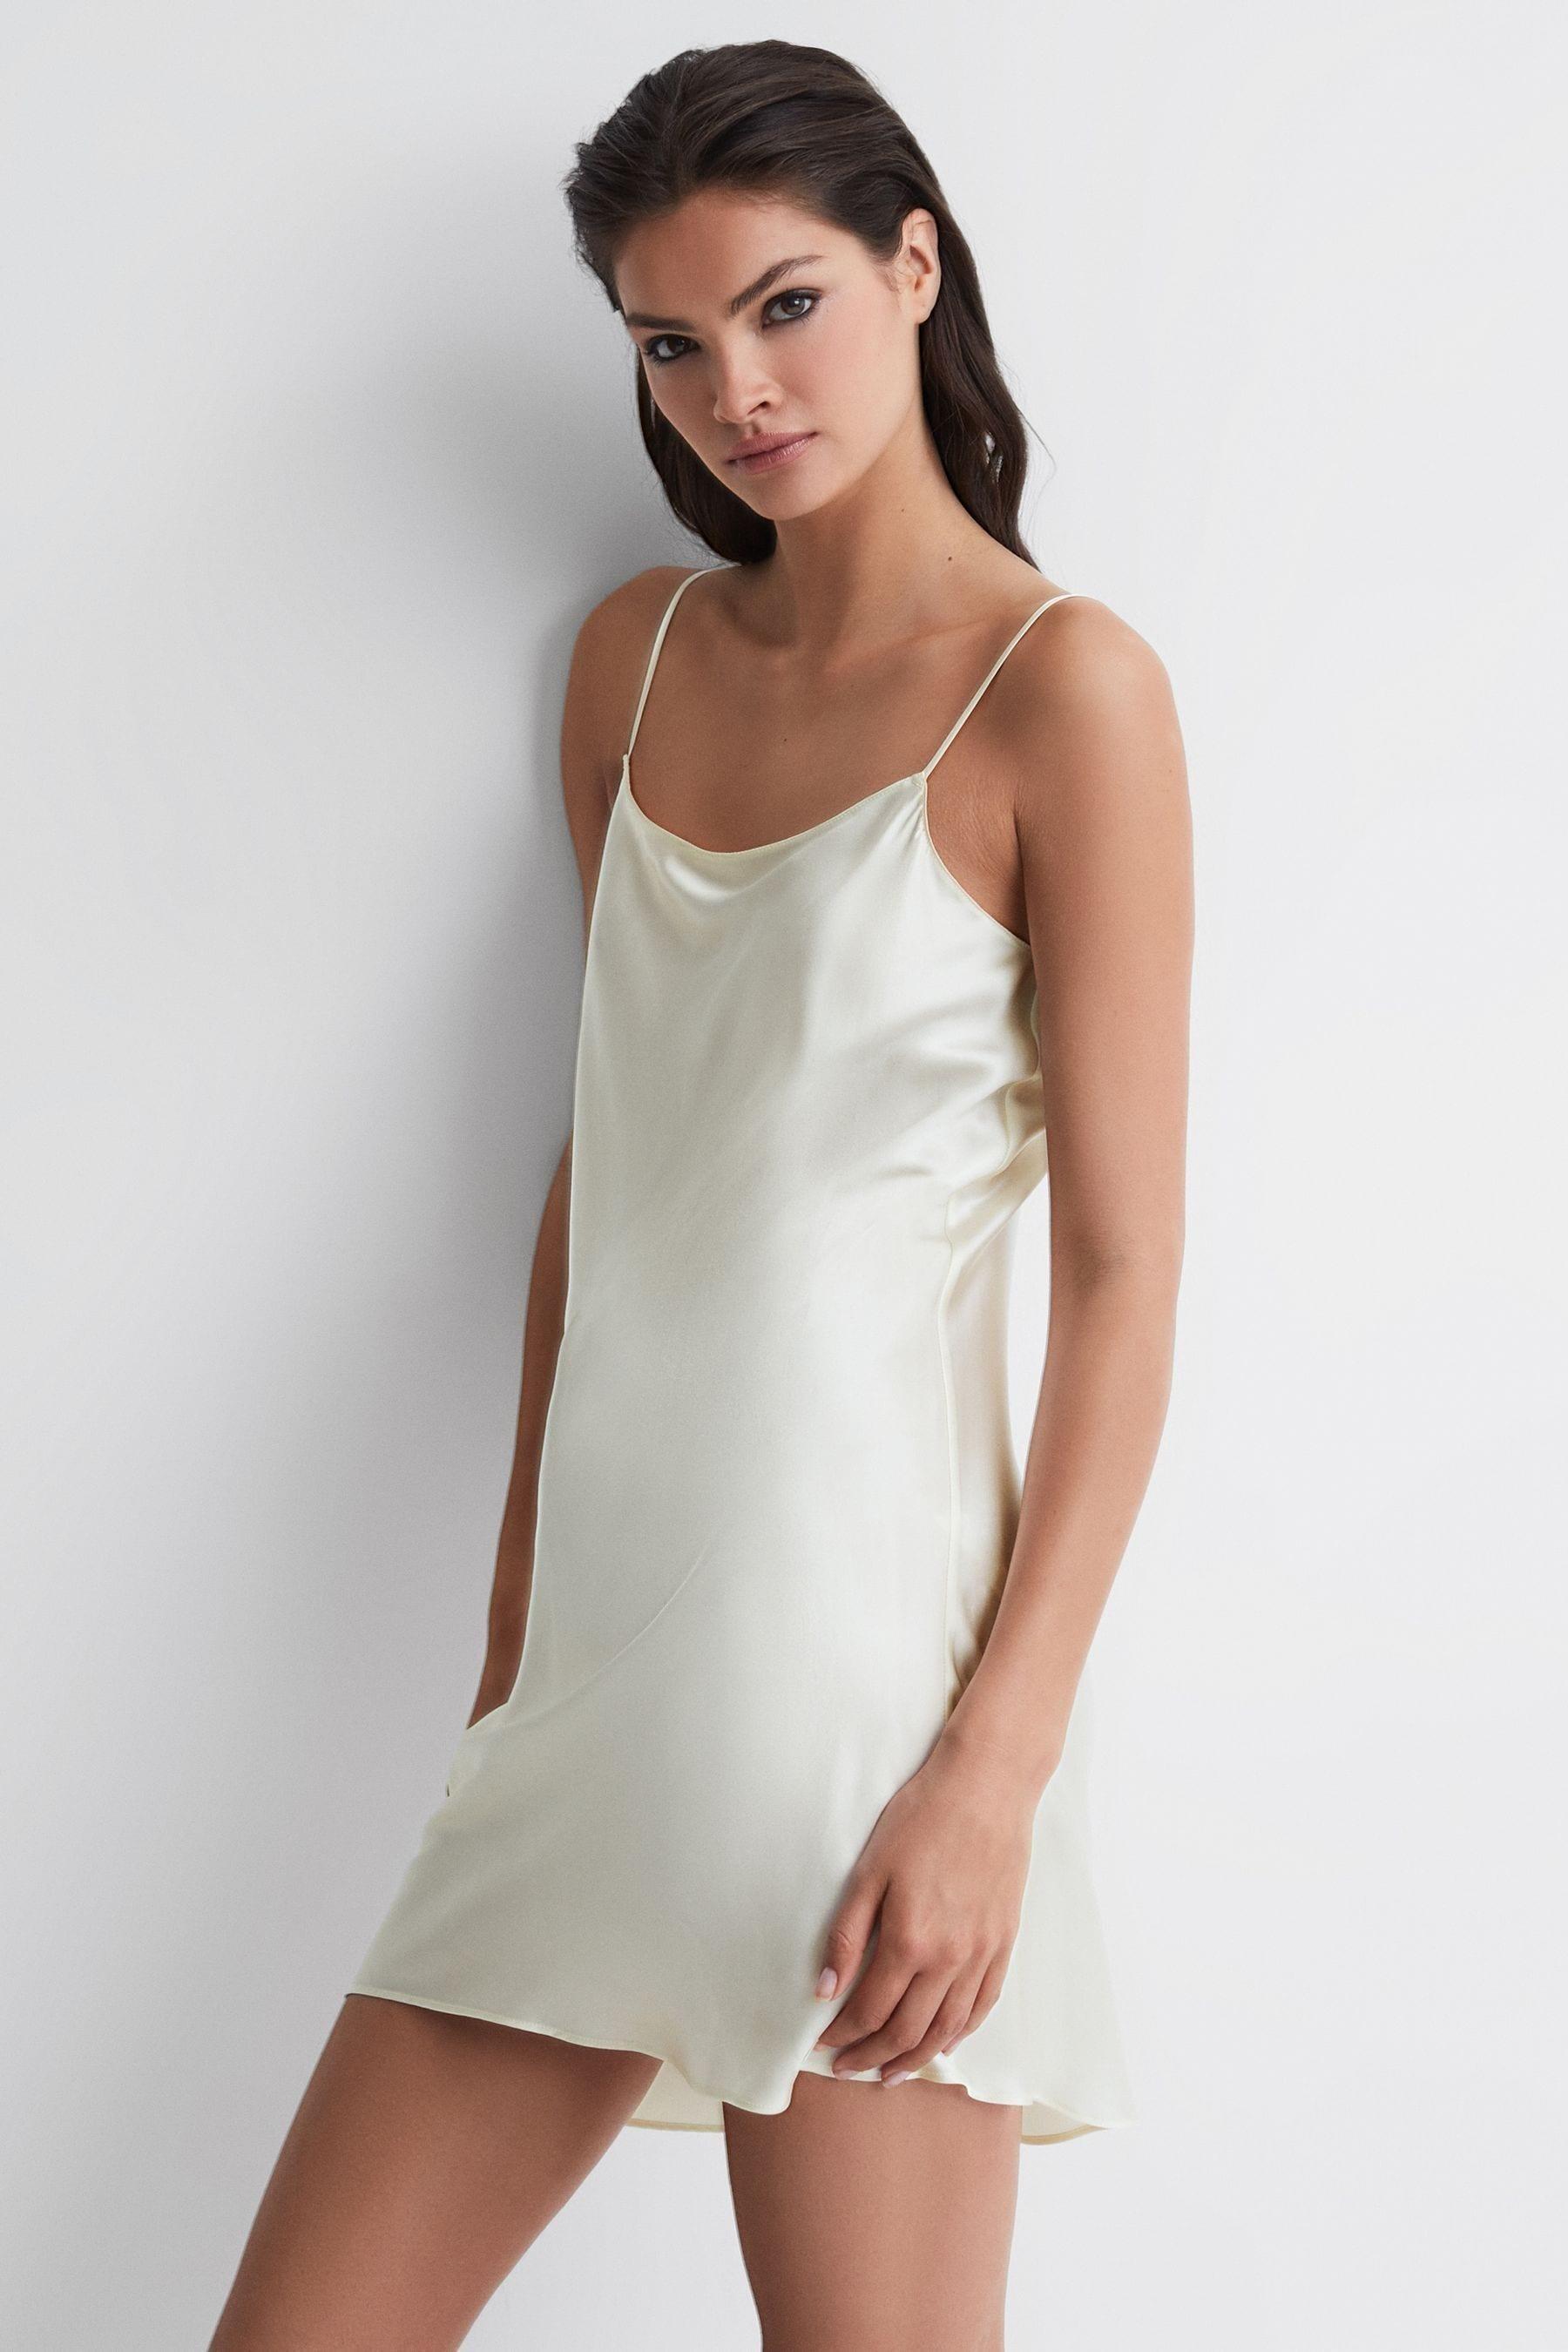 Reiss Klein - Calvin Klein Underwear Silk Night Dress, S in White